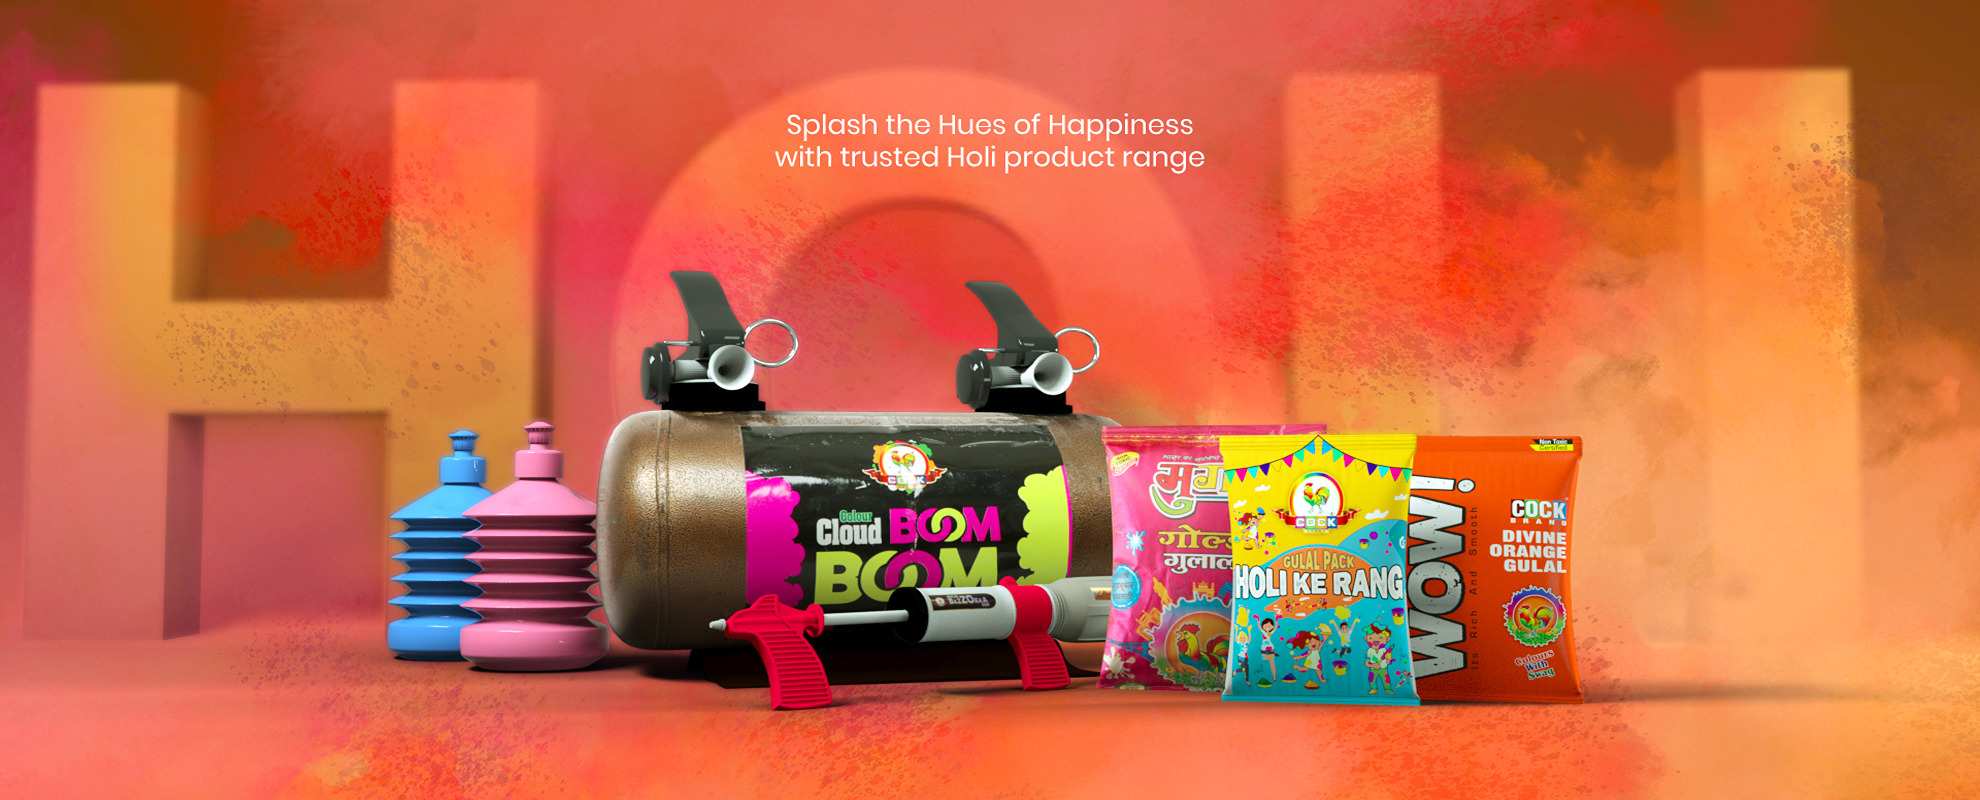 Buy Healthy Treat Festive Fun Holi Gift Box I Holi Gift Hamper I Snacks,  Thandai, Herbal Gulal I Corporate Gifts I Personal Gift Box I Premium Gift  Hamper | Roasted Dry fruit